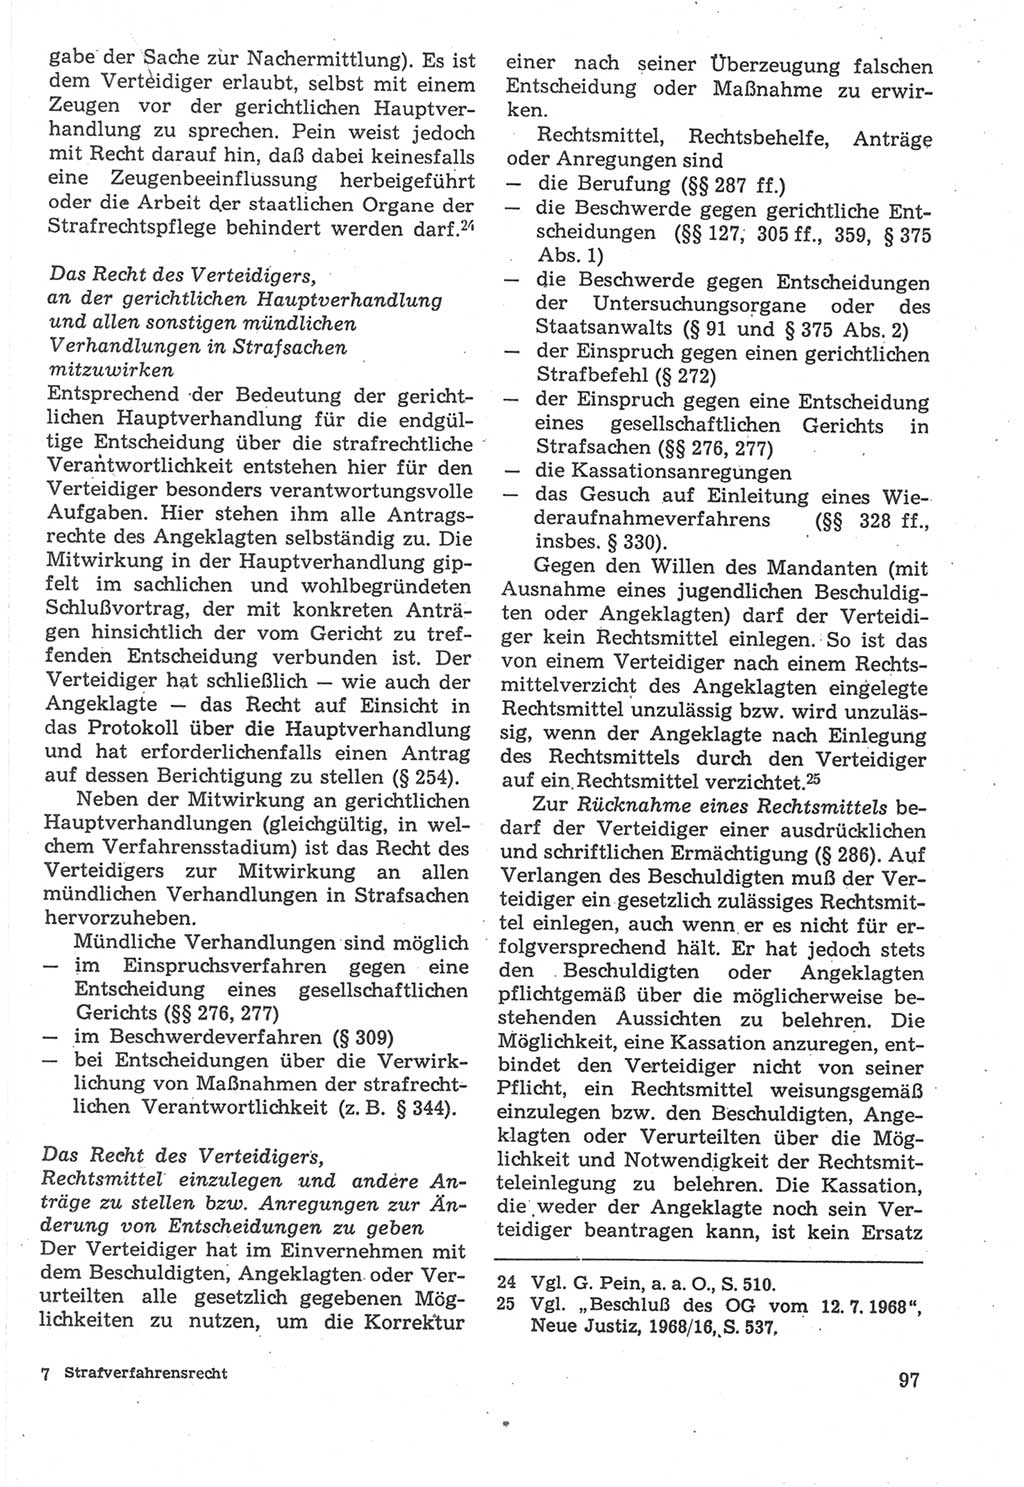 Strafverfahrensrecht [Deutsche Demokratische Republik (DDR)], Lehrbuch 1987, Seite 97 (Strafverf.-R. DDR Lb. 1987, S. 97)